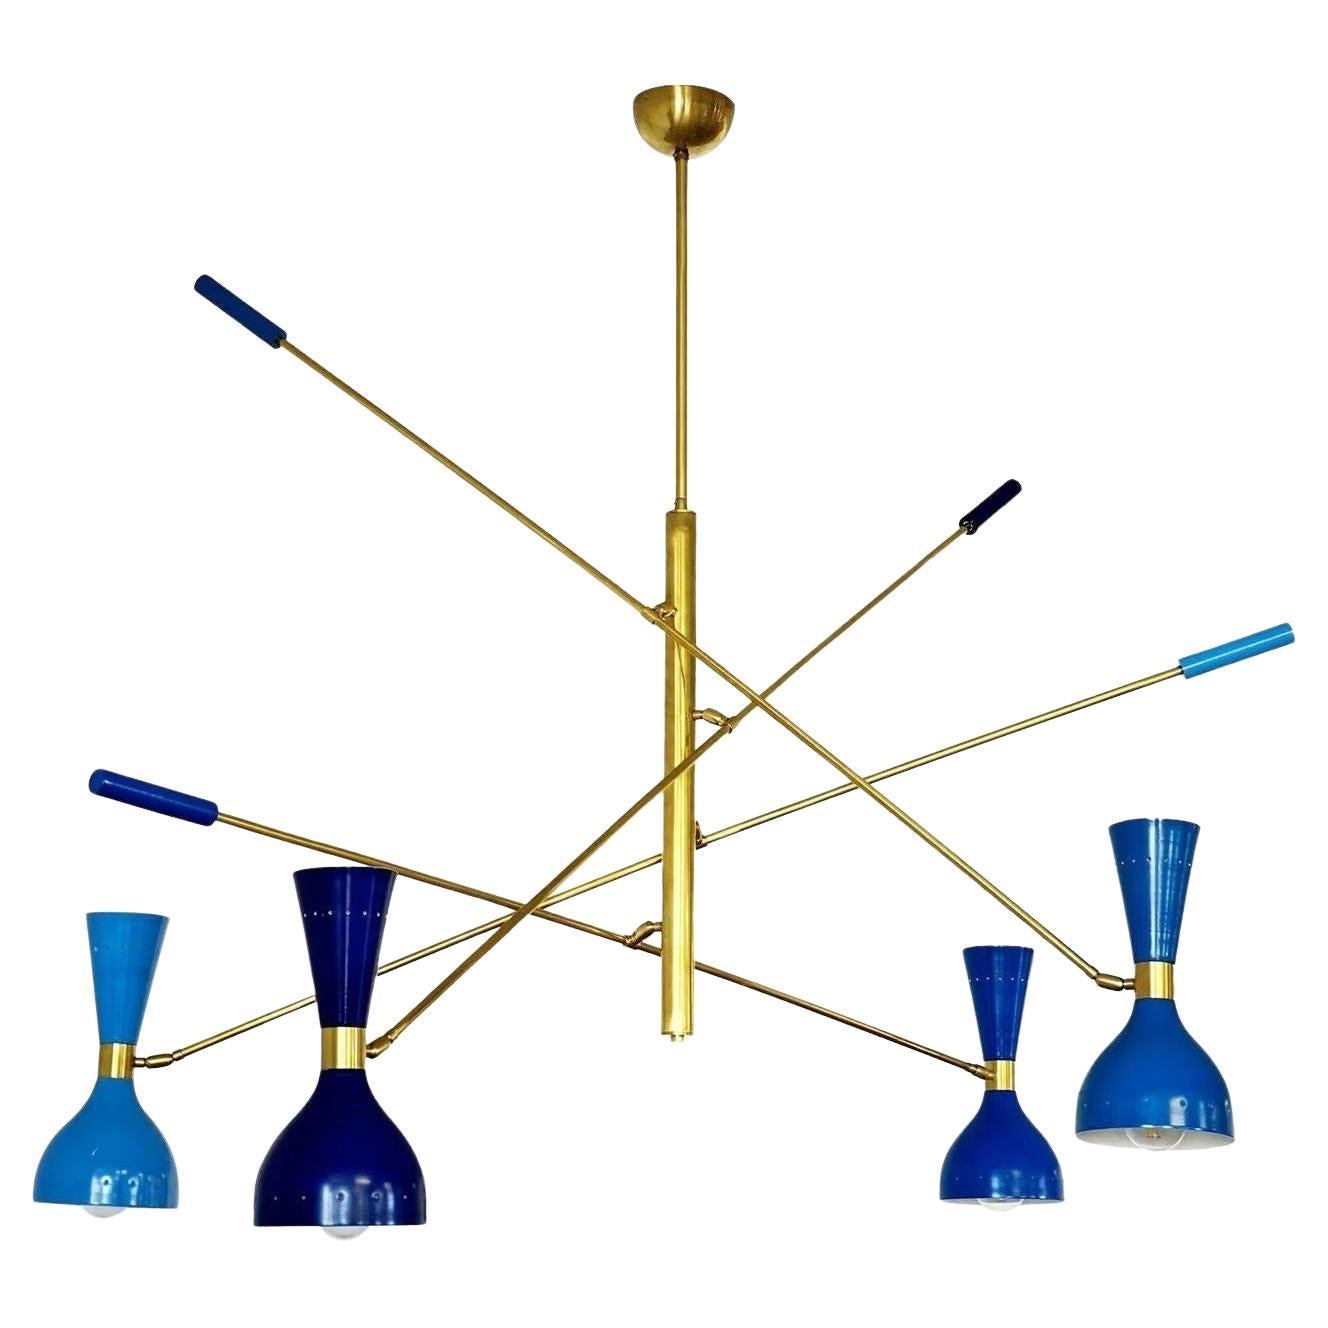 Quadriennale-Kronleuchter mit 4 Armen aus Messing, zwei Schirmen, Contrappeso, 4 Blautöne